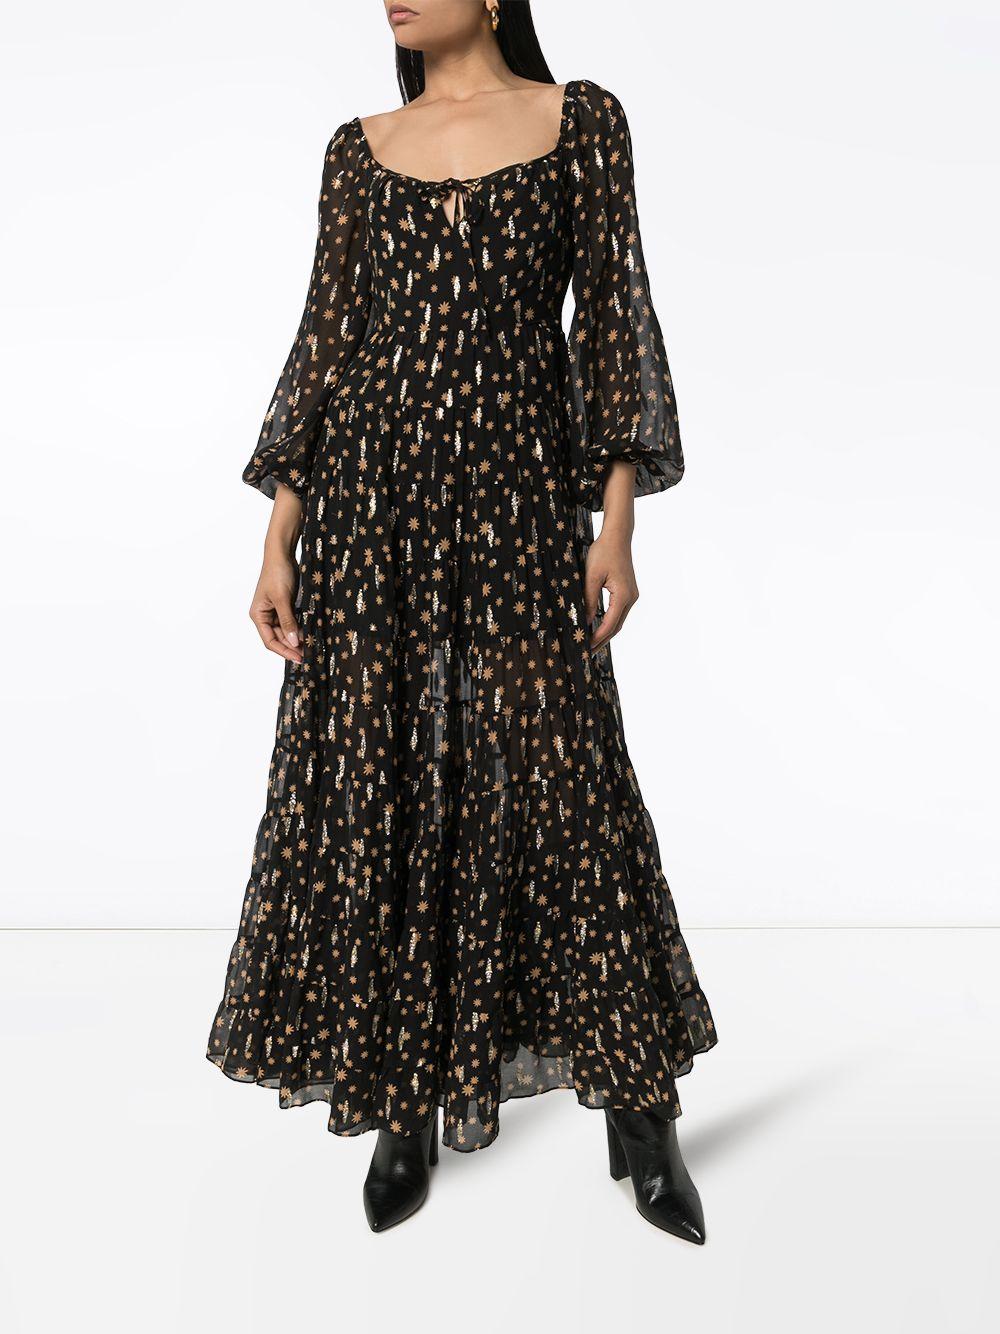 RIXO London Cameron Star Print Maxi Dress in Black | Lyst